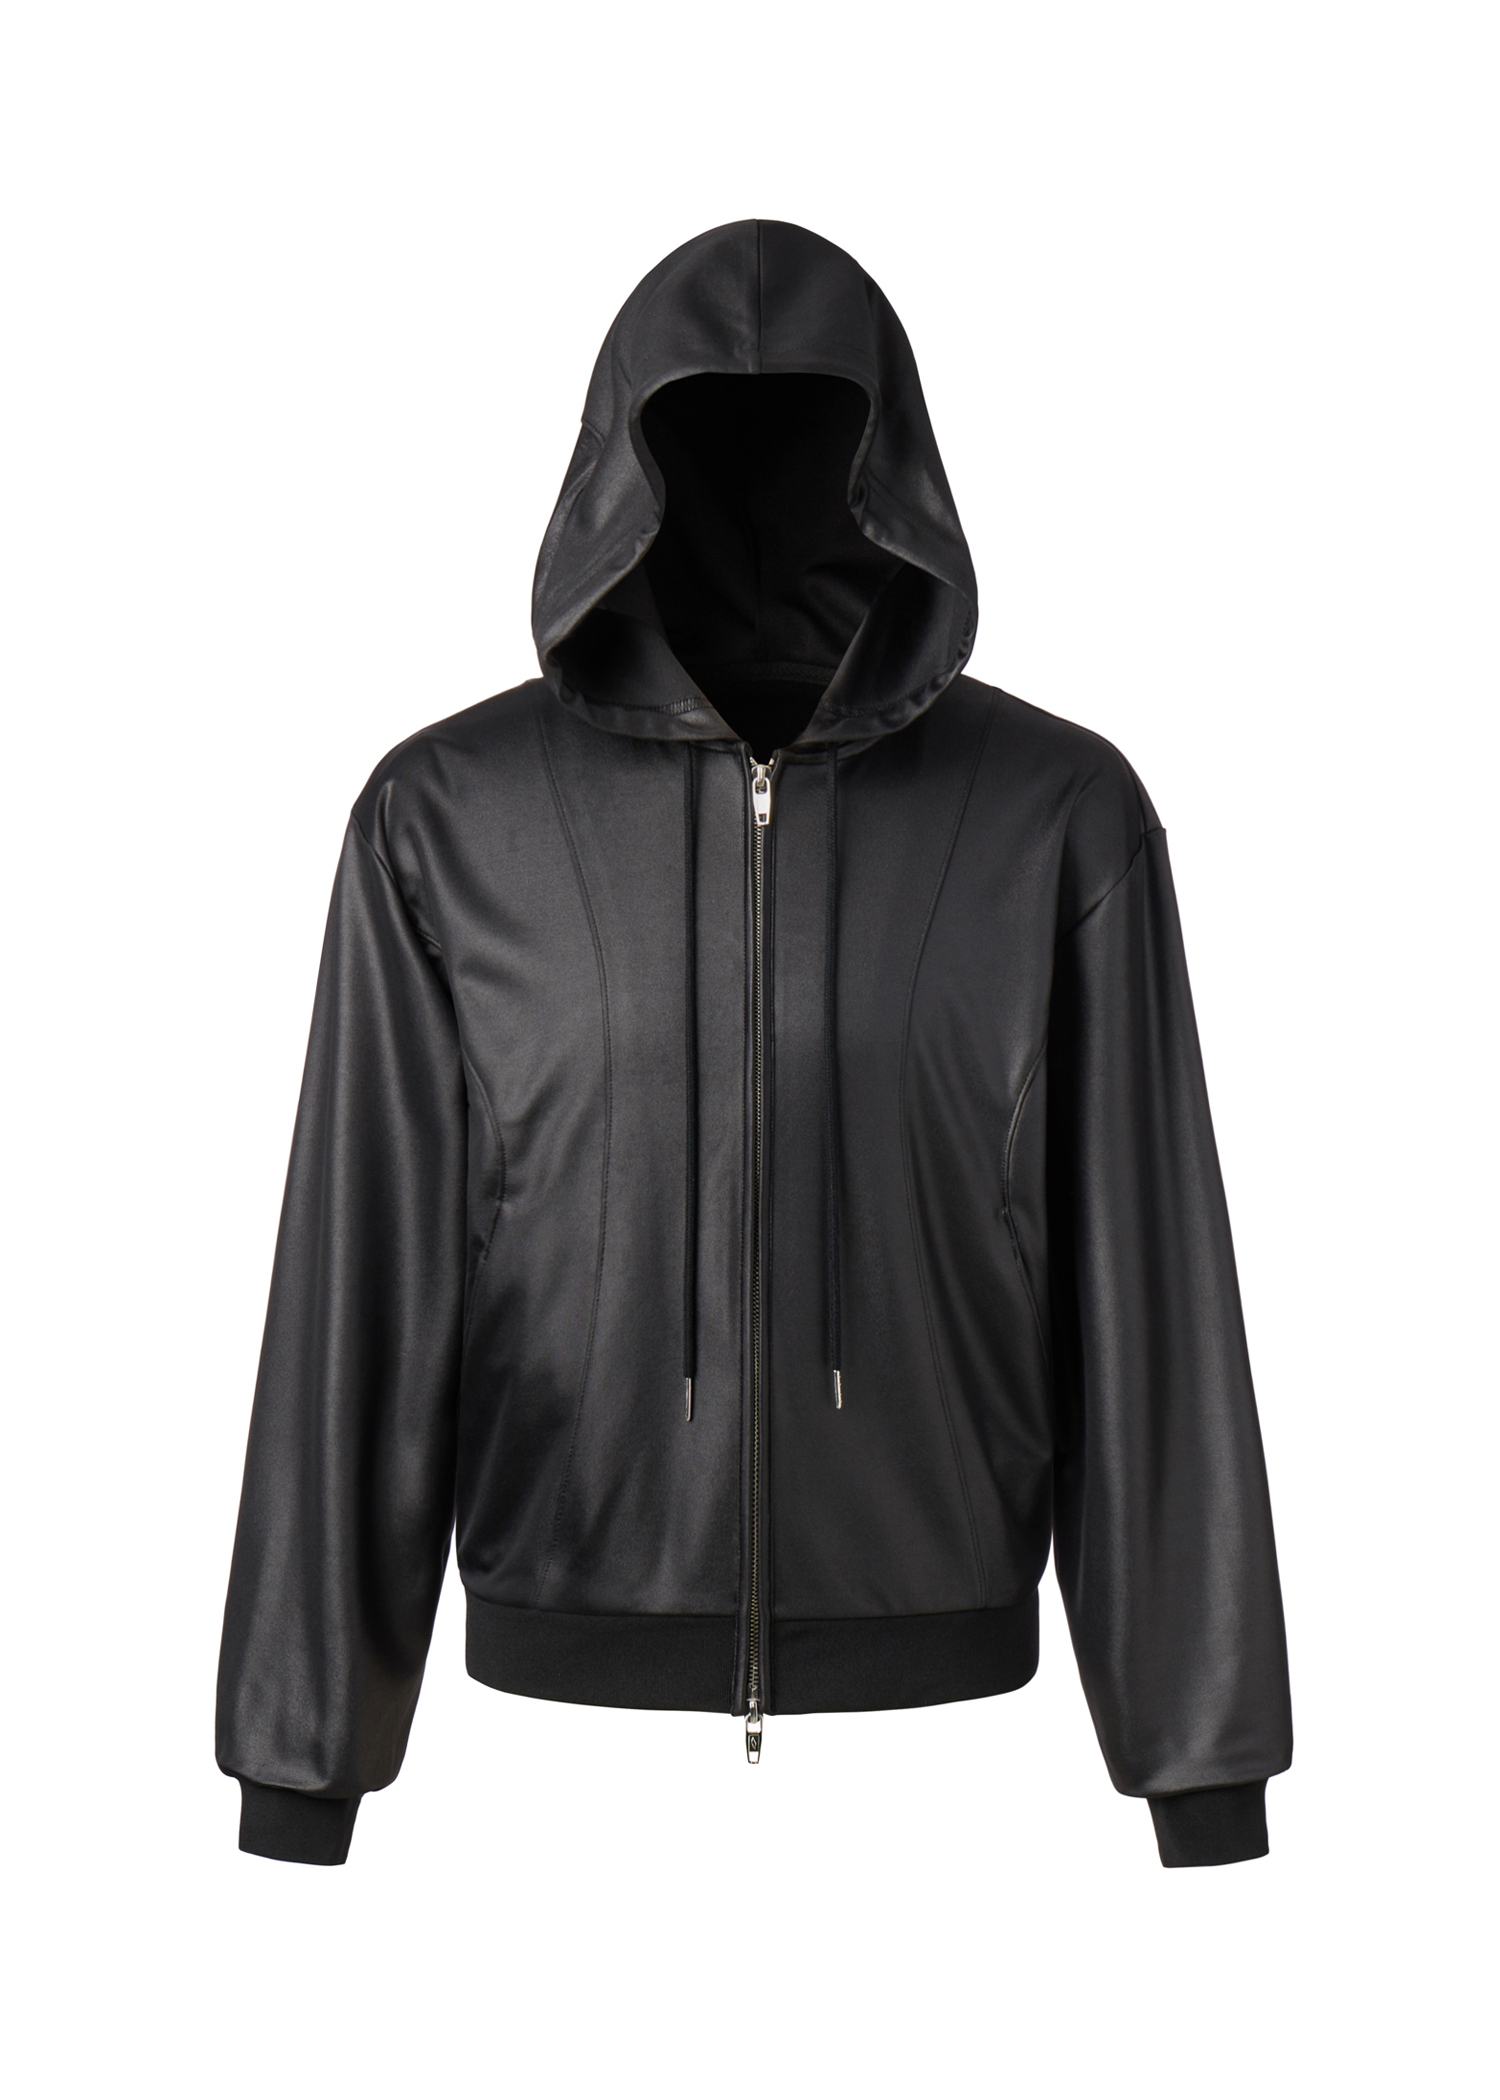 004-23 athleisure zip-up hoodie - black